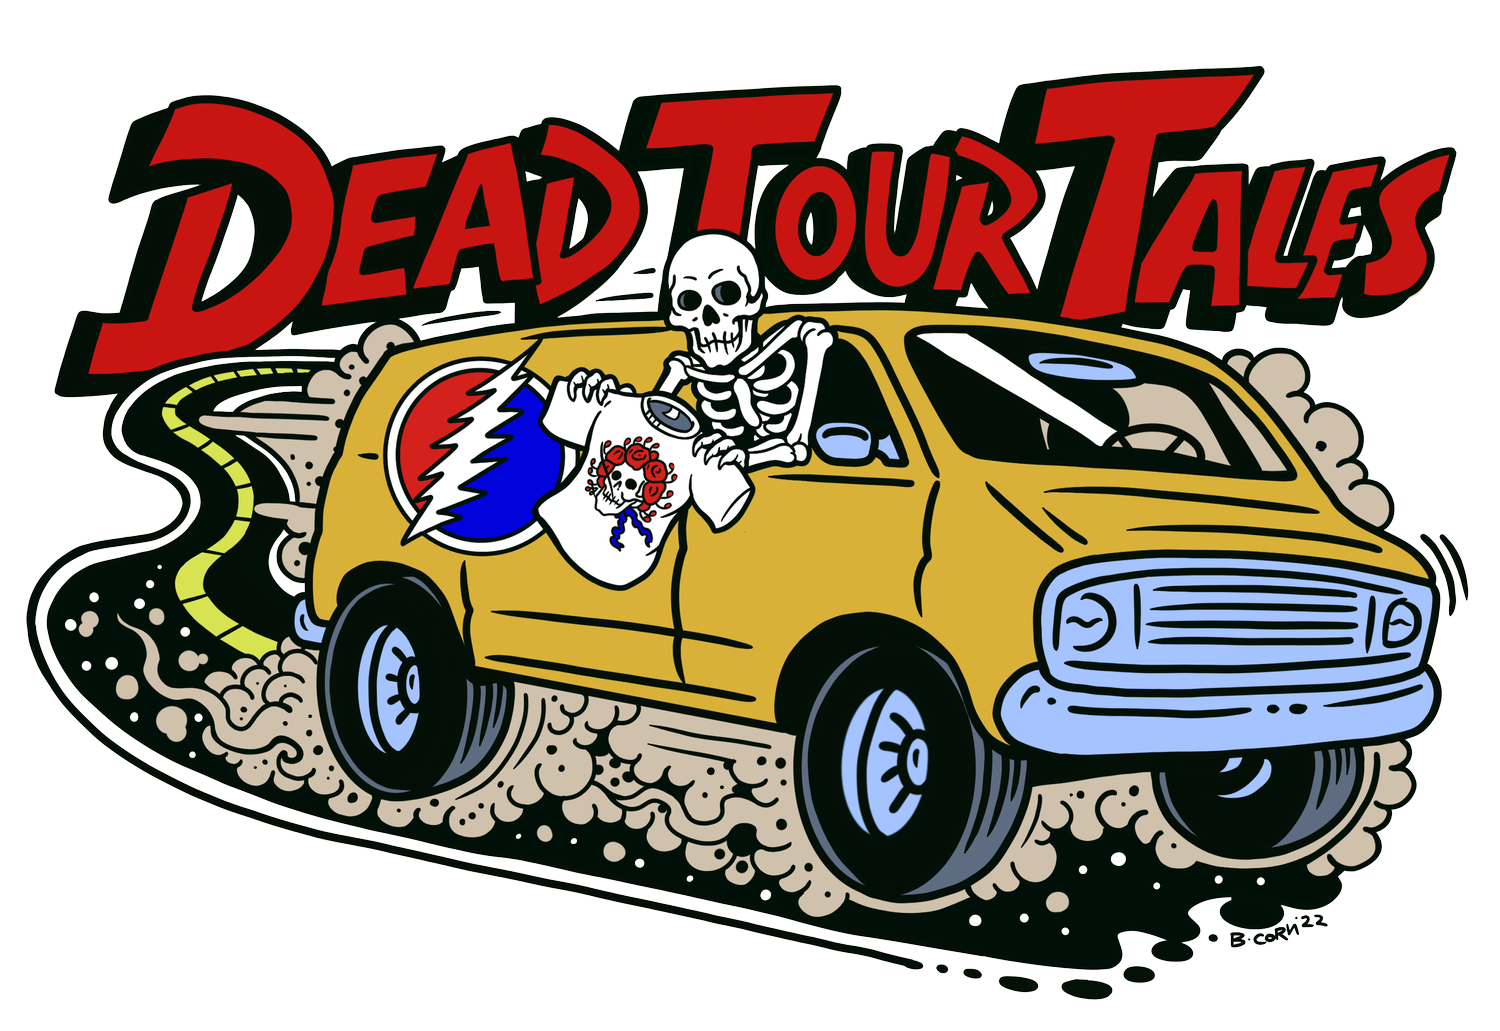 Dead Tour Tales